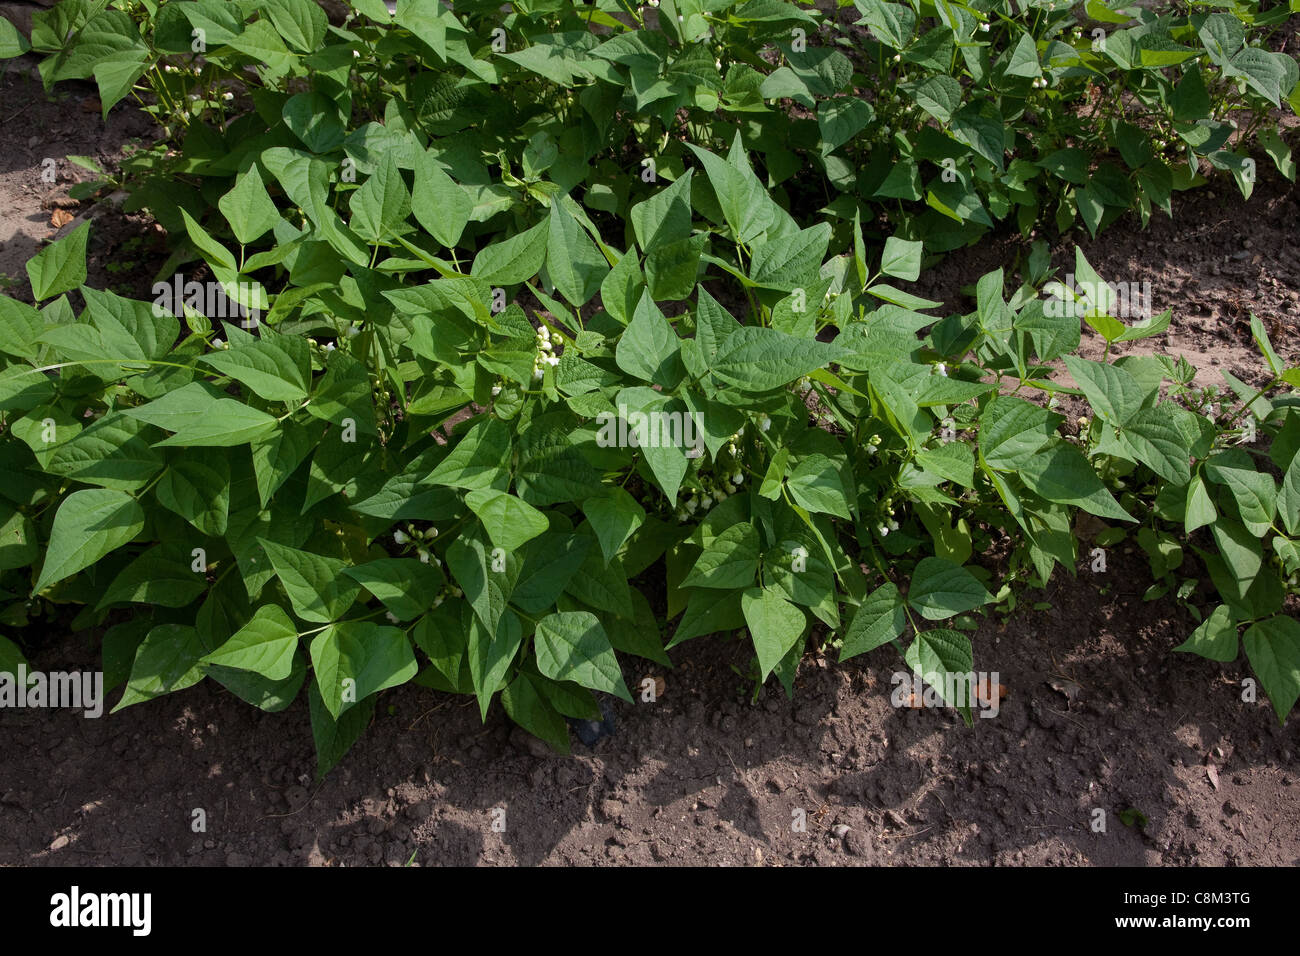 La floraison des plants de haricot vert (Phaseolus cultivar) dans le jardin de légumes,la mi-juin, au Michigan, USA Banque D'Images